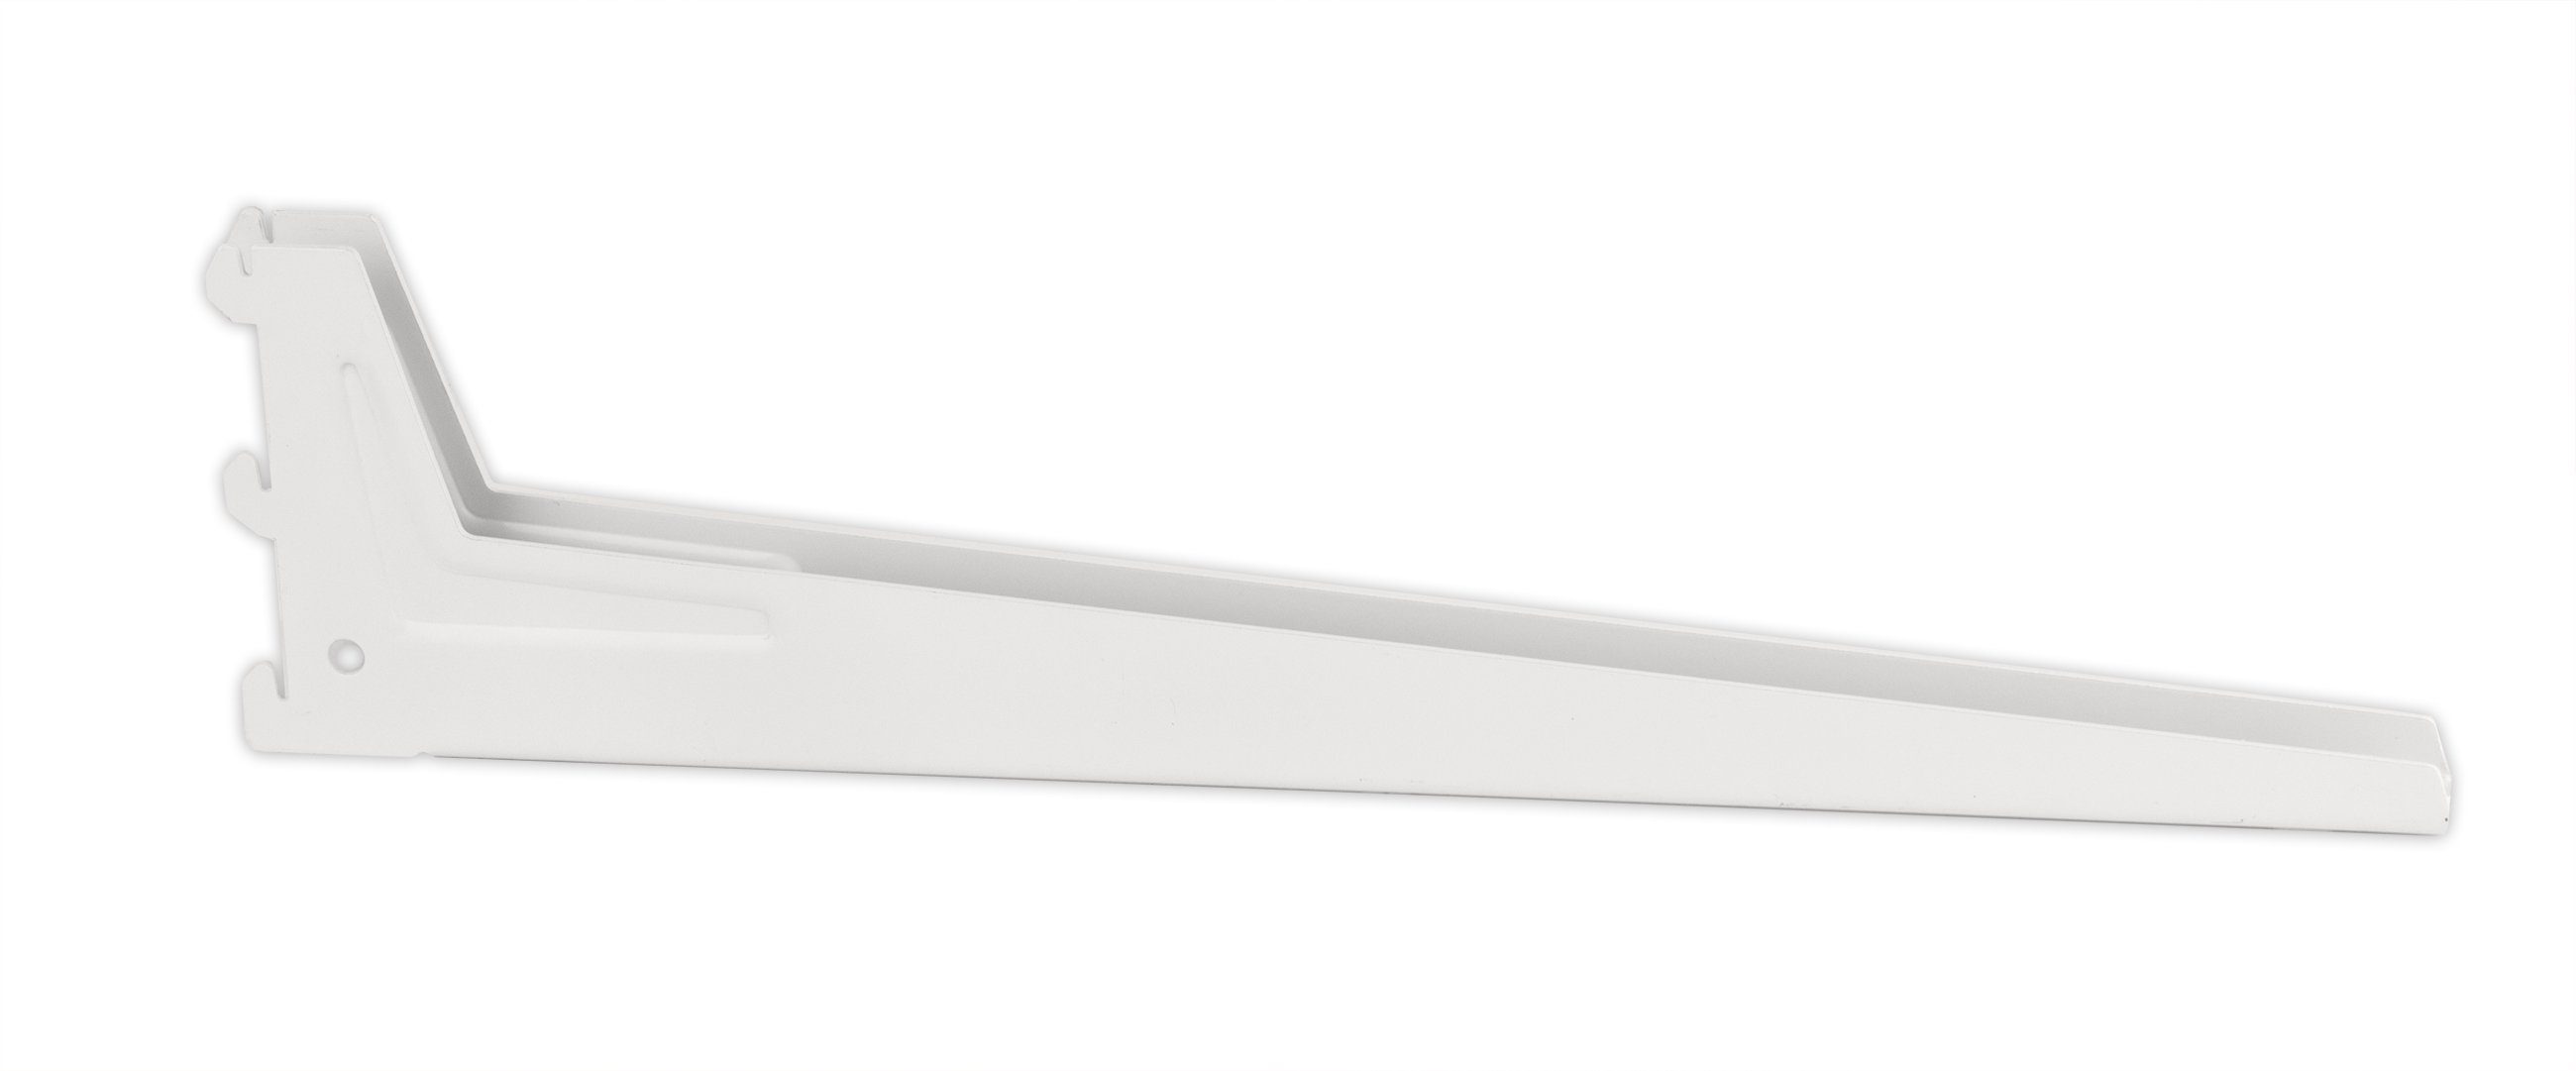 Wandschienen Regalträger BigDean zu 18x5 weiß Passend cm Wandregalhalter Winkel-Träger